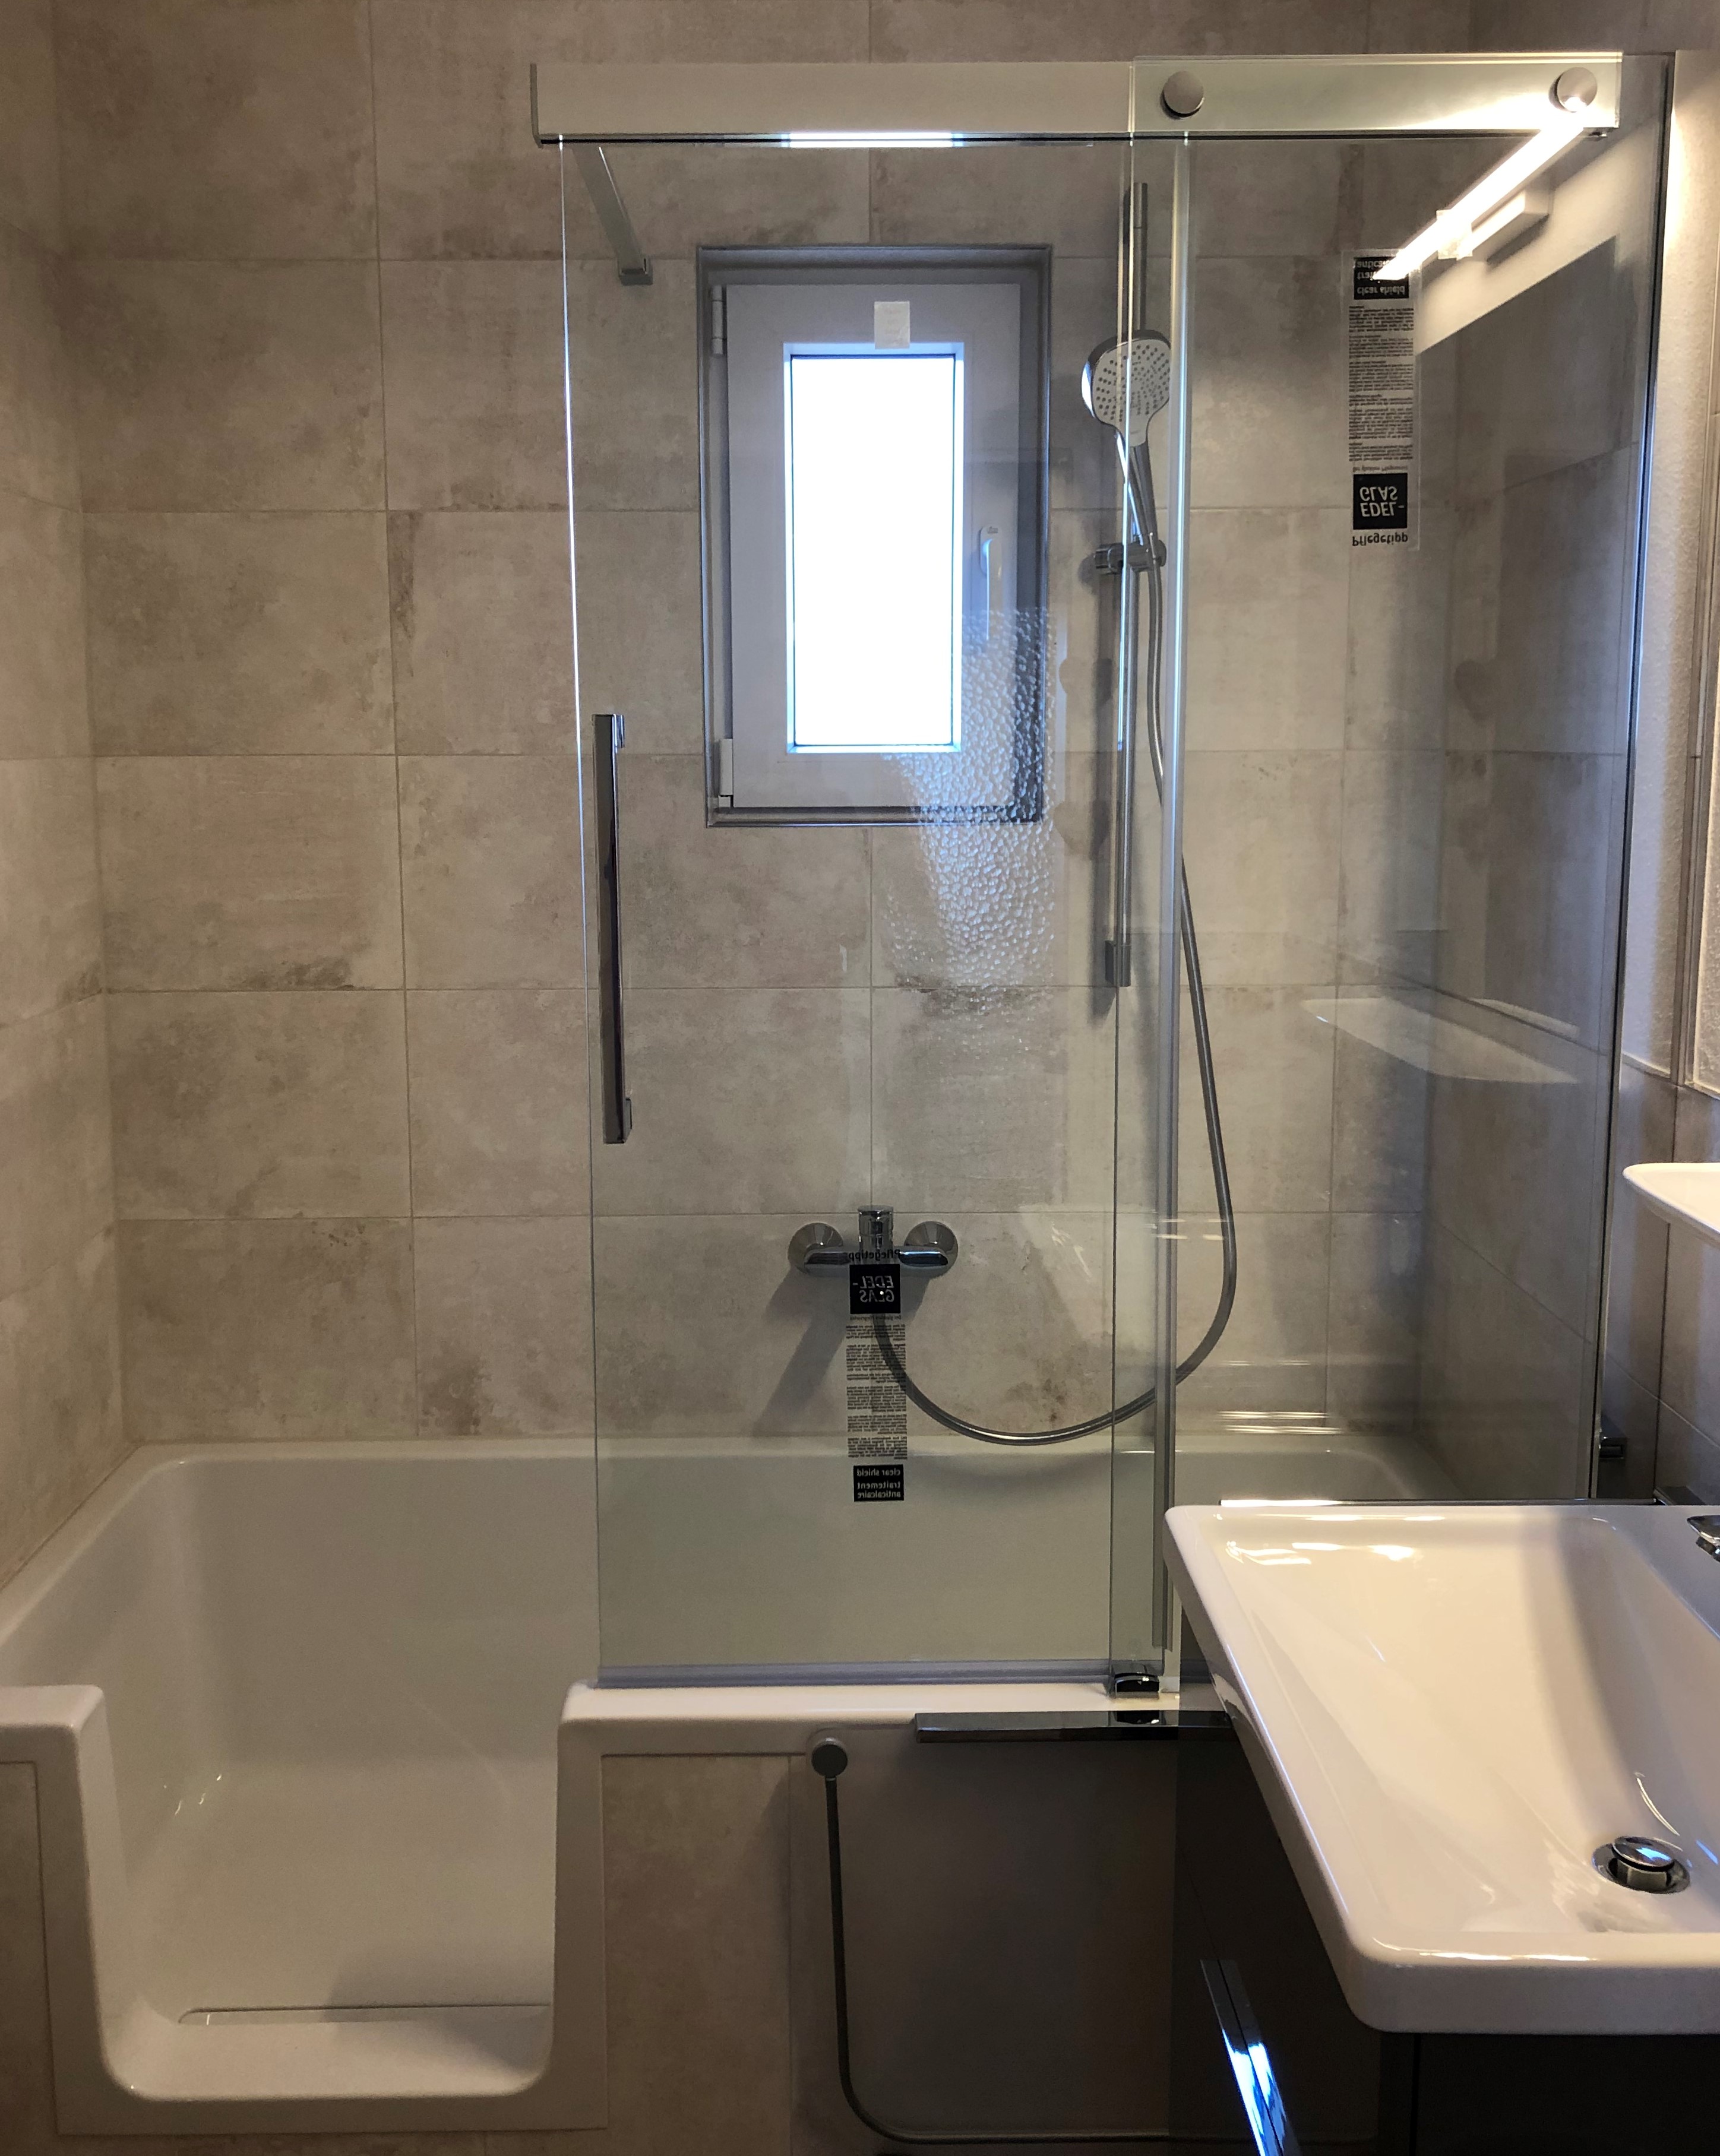 :Das Badezimmer wurde im November 2019 renoviert u hat eine begehbare Wanne